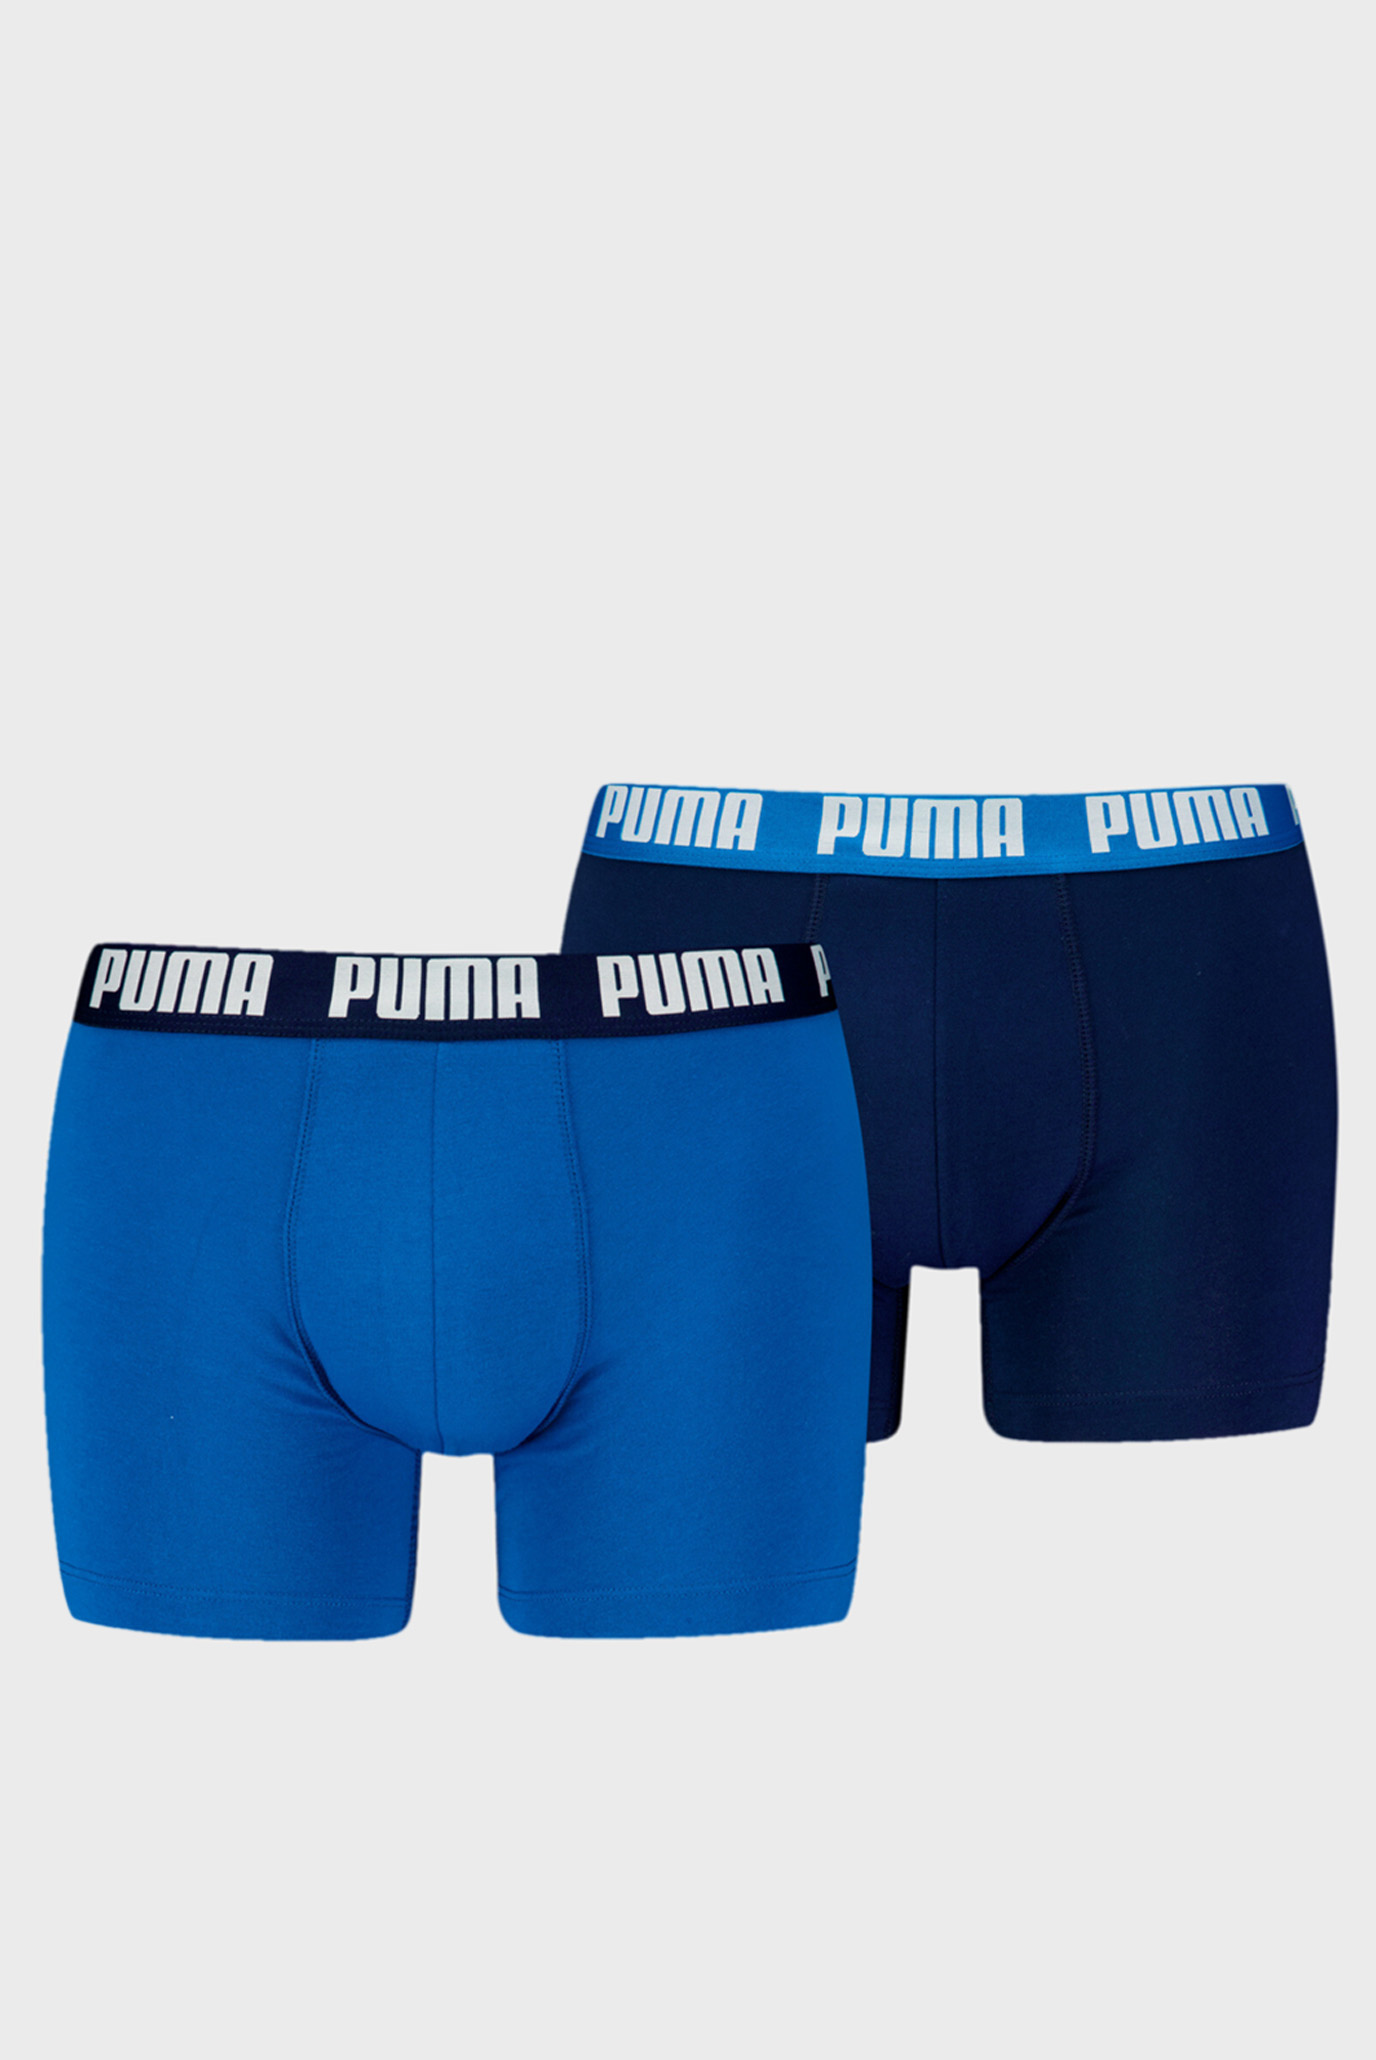 Чоловічі сині боксери (2 шт) PUMA Men's Boxer Briefs 2 pack 1